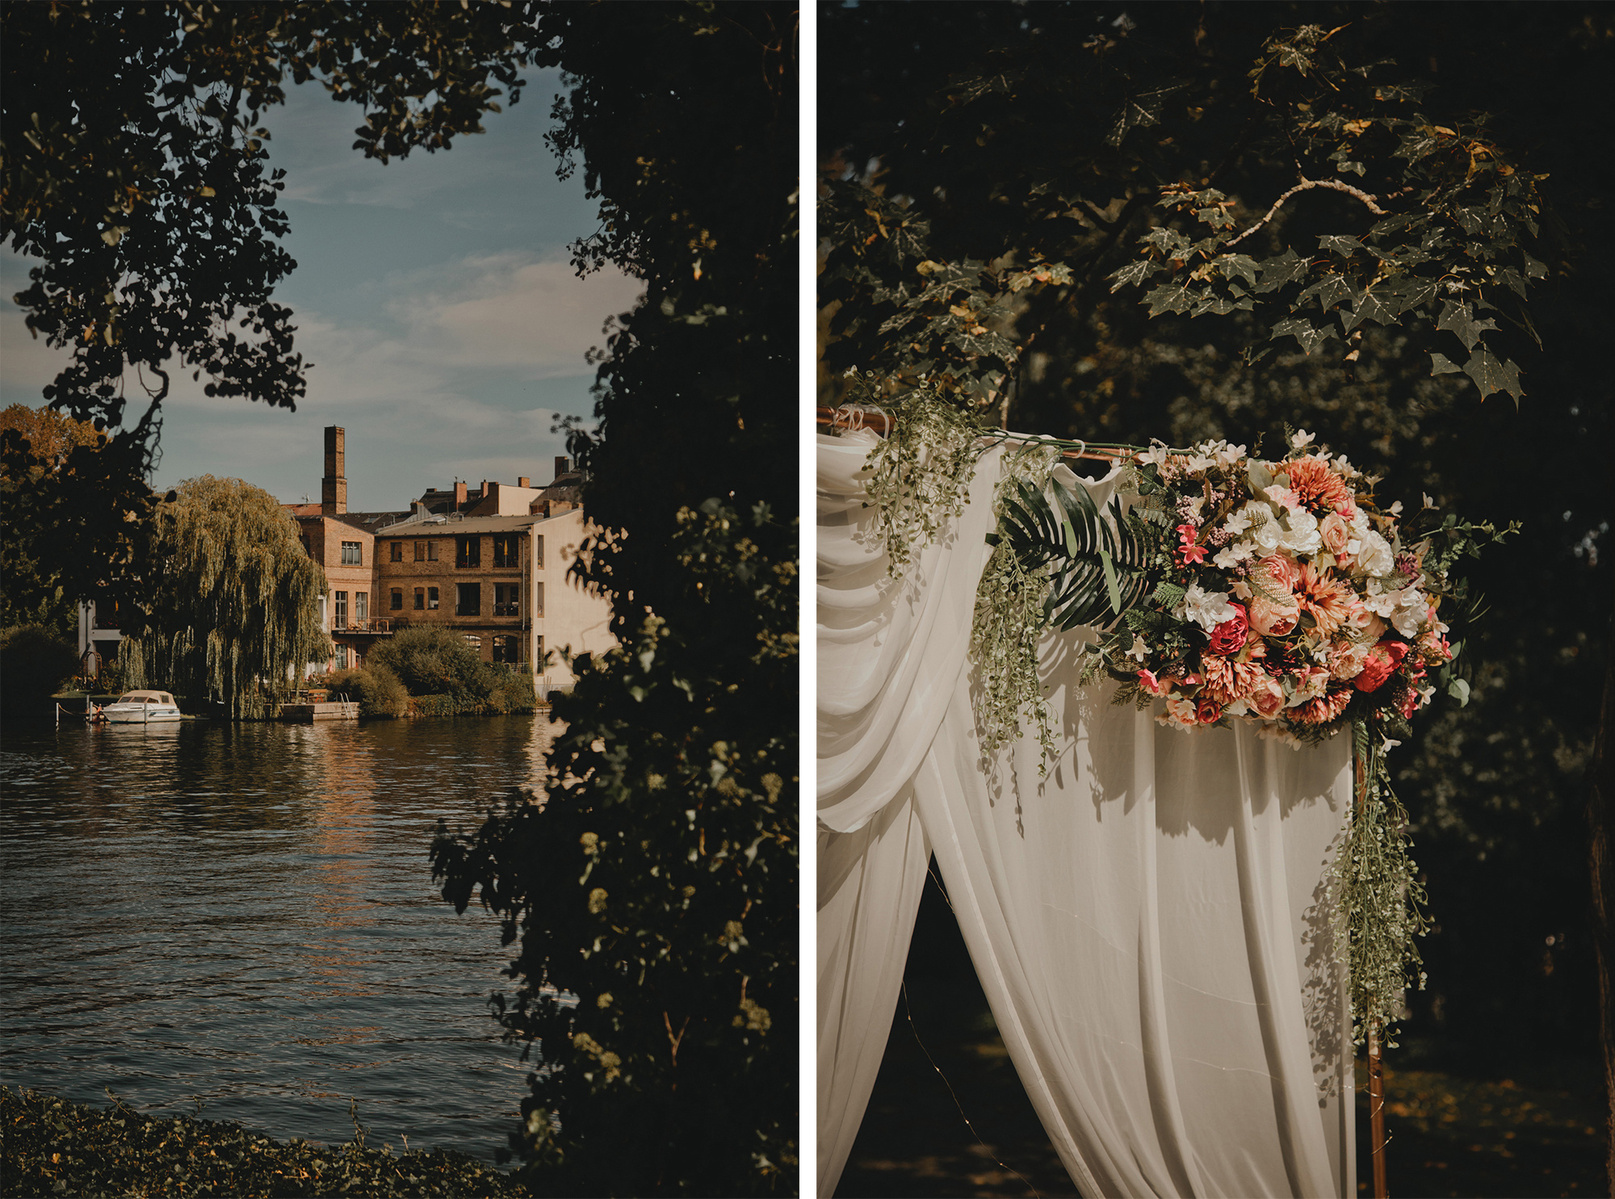 Romantisches Trausetting für eine Hochzeit am Wasser in Berlin mit einem opulent geschmückten Traubogen.